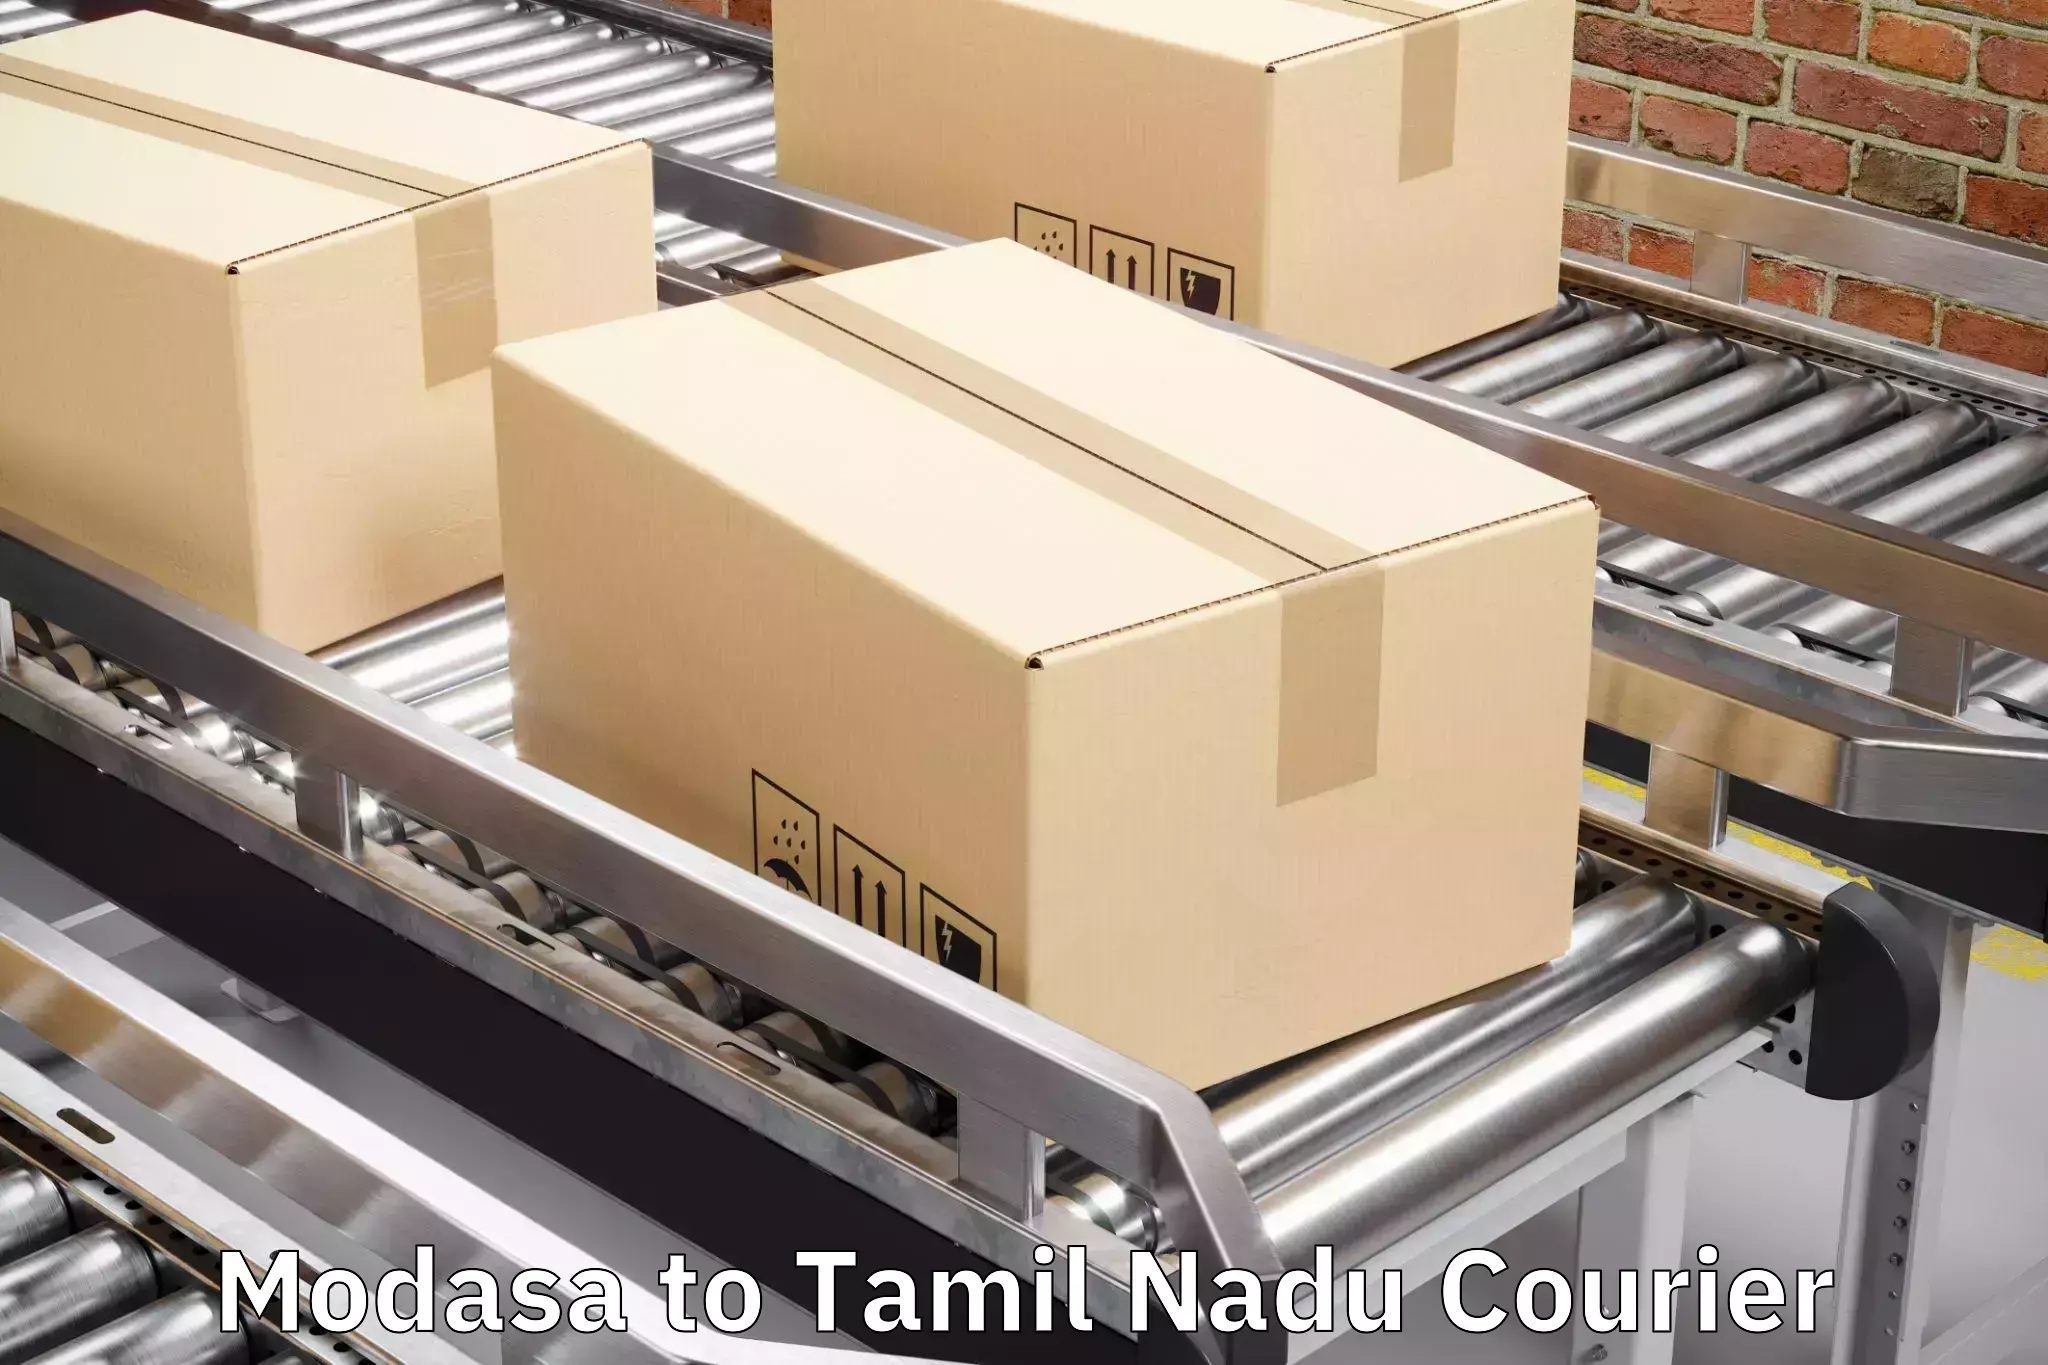 Luggage transport operations Modasa to Tiruturaipundi